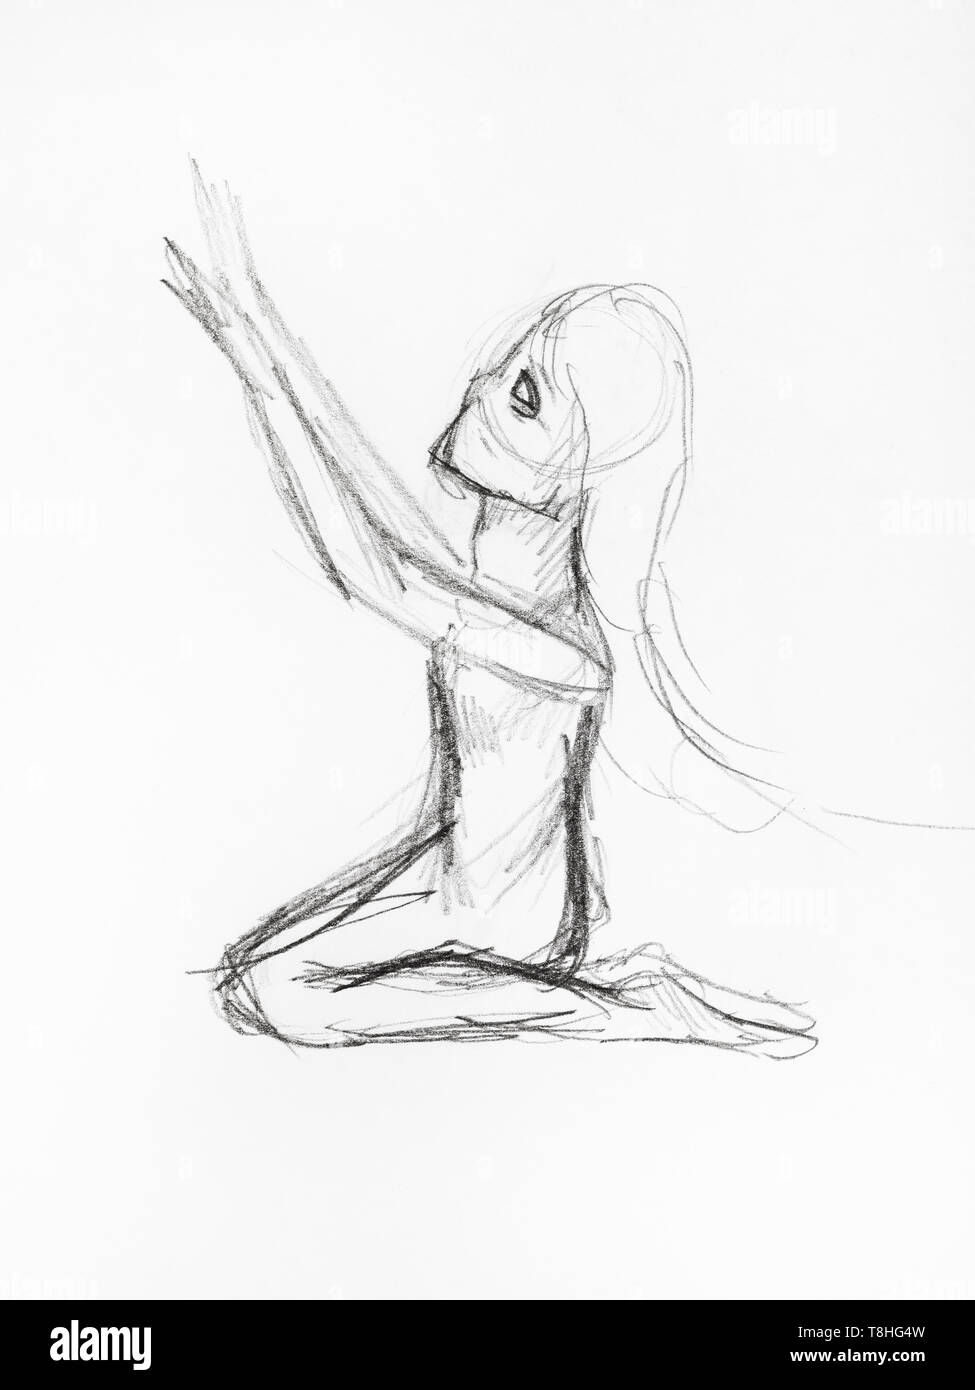 Skizze des betenden Frau auf den Knien von schwarzen Stift auf weißem Papier gezeichnet Stockfoto